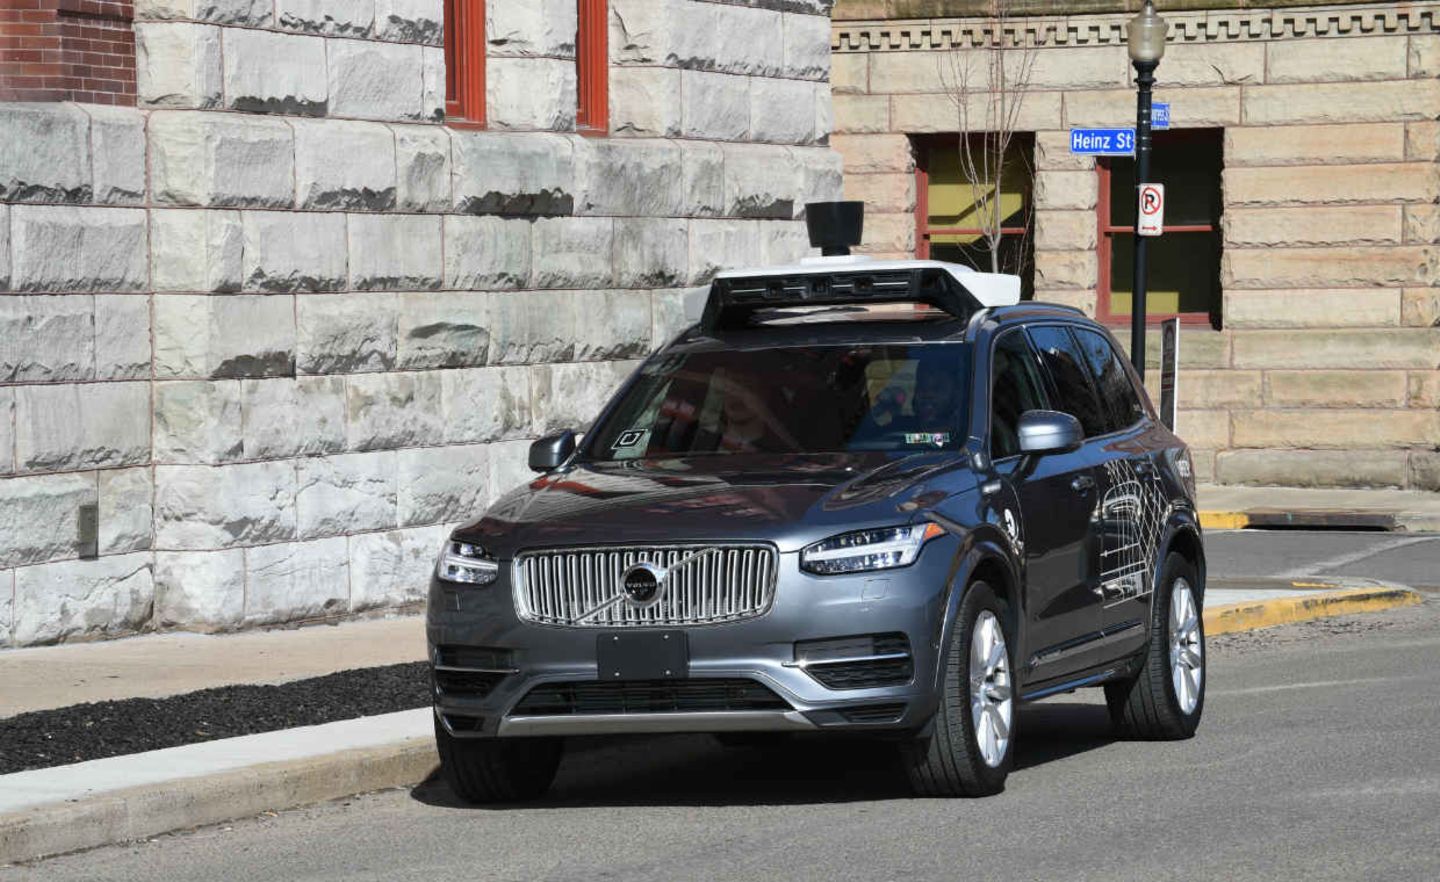 Auch Uber experimentiert mit selbstfahrenden Autos